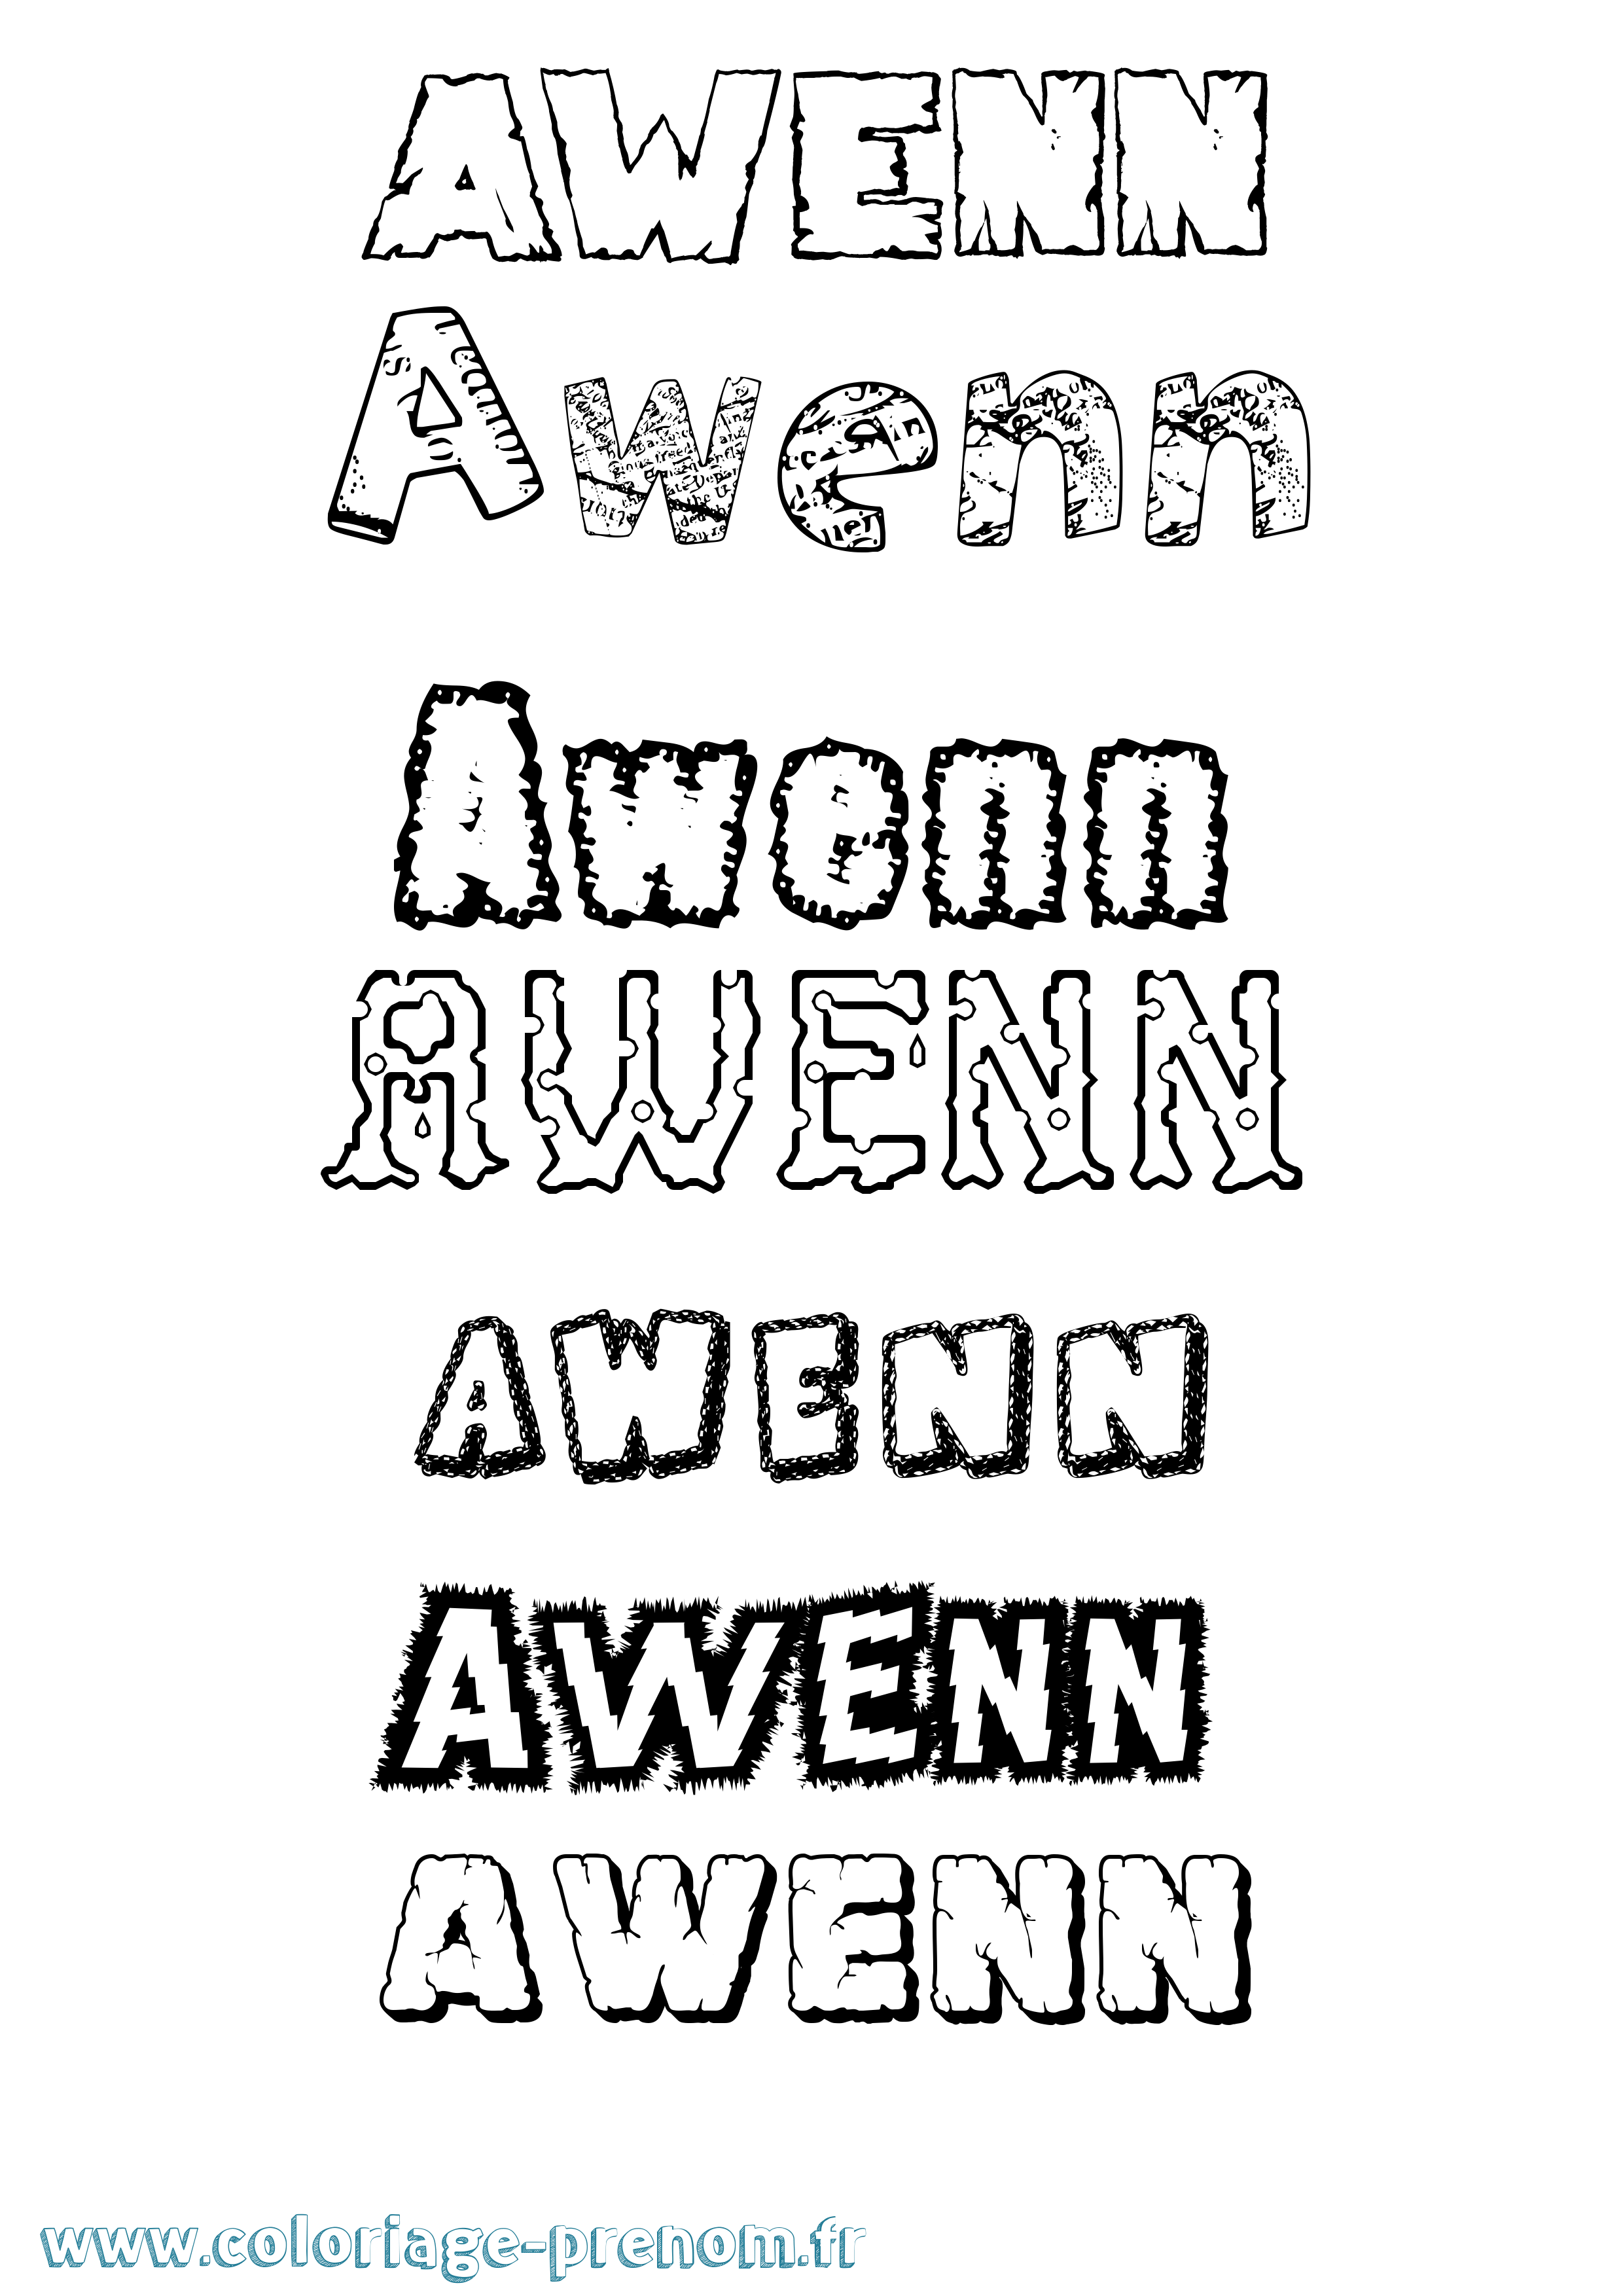 Coloriage prénom Awenn Destructuré